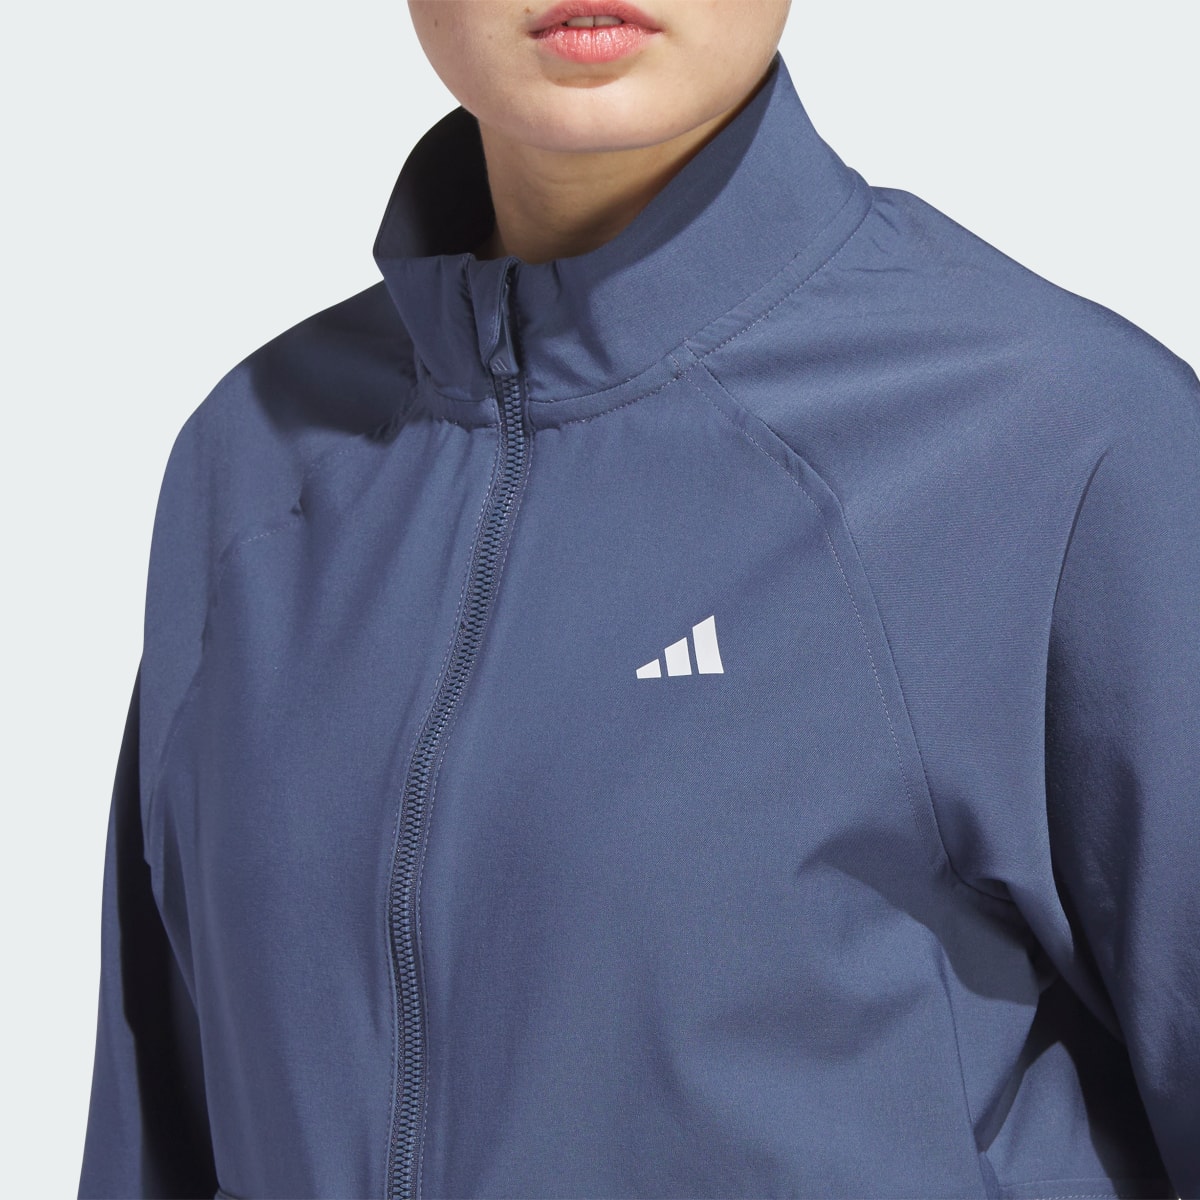 Adidas Women's Ultimate365 Novelty Jacket. 6